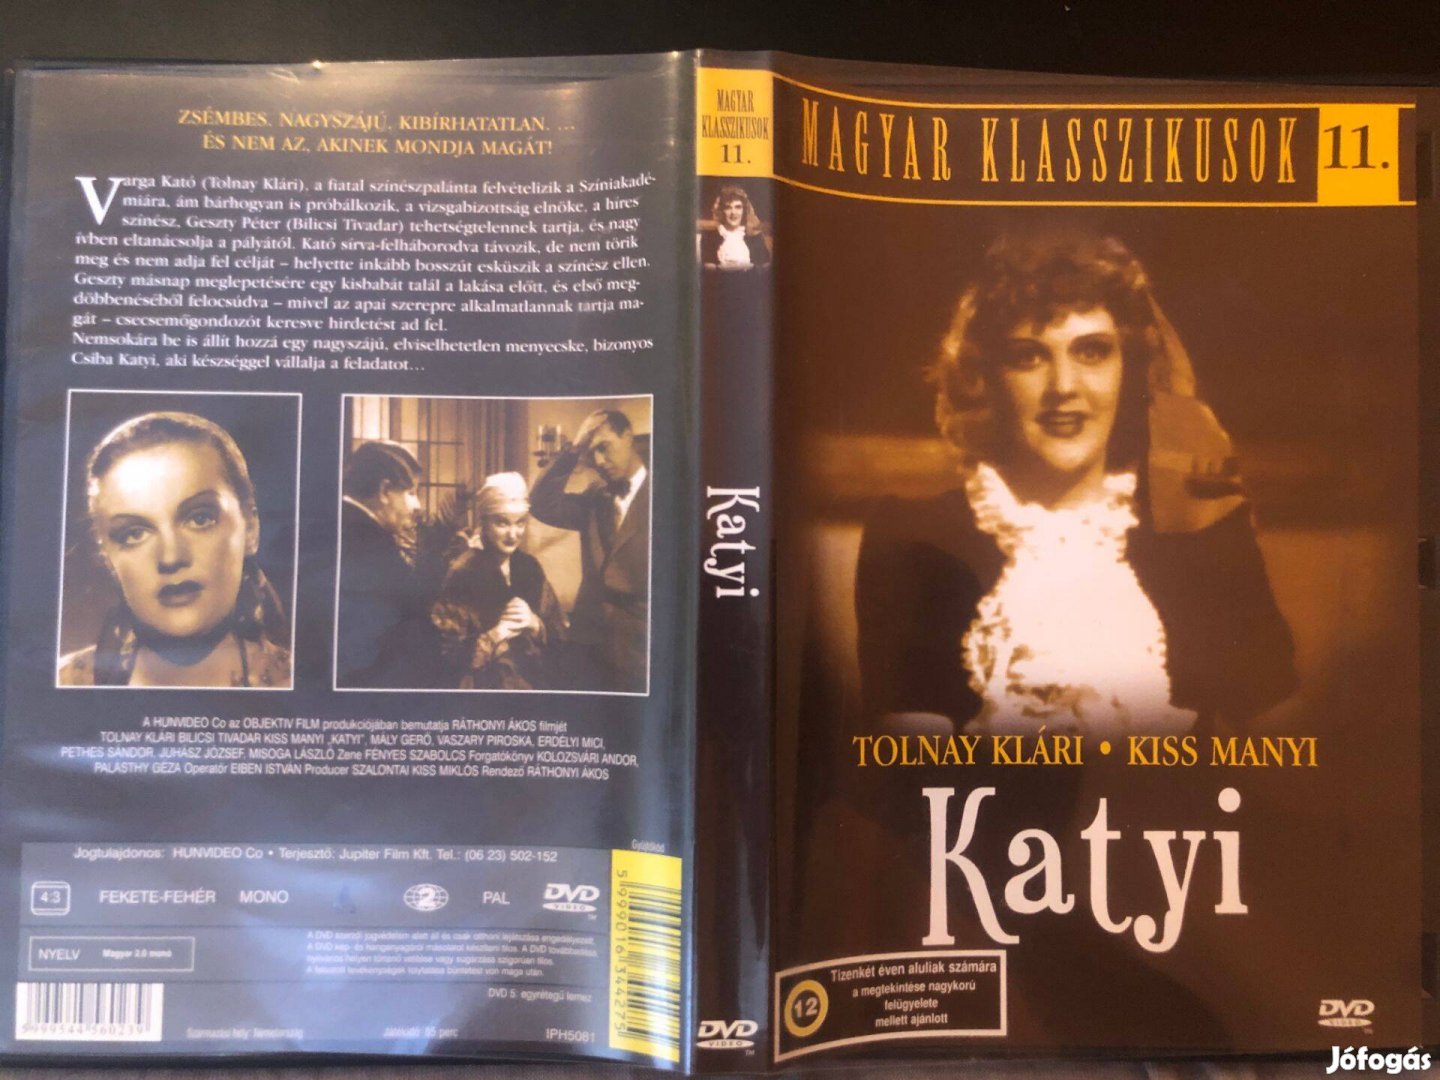 Katyi DVD Magyar klasszikusok 11. (karcmentes, Tolnay Klári)